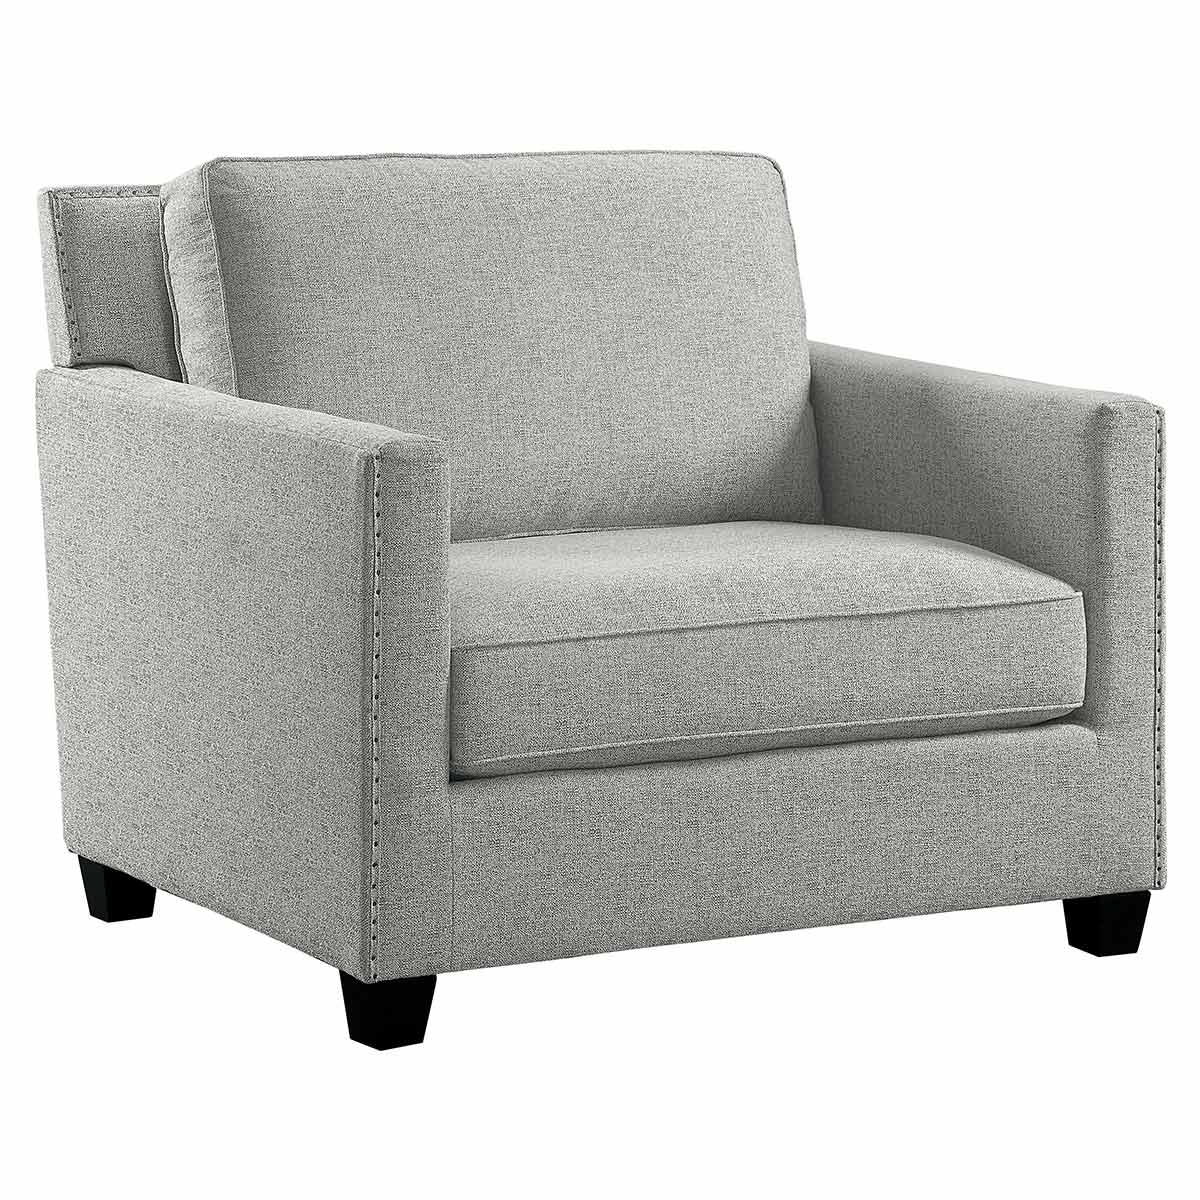 Homelegance Pickerington Chair - Light gray